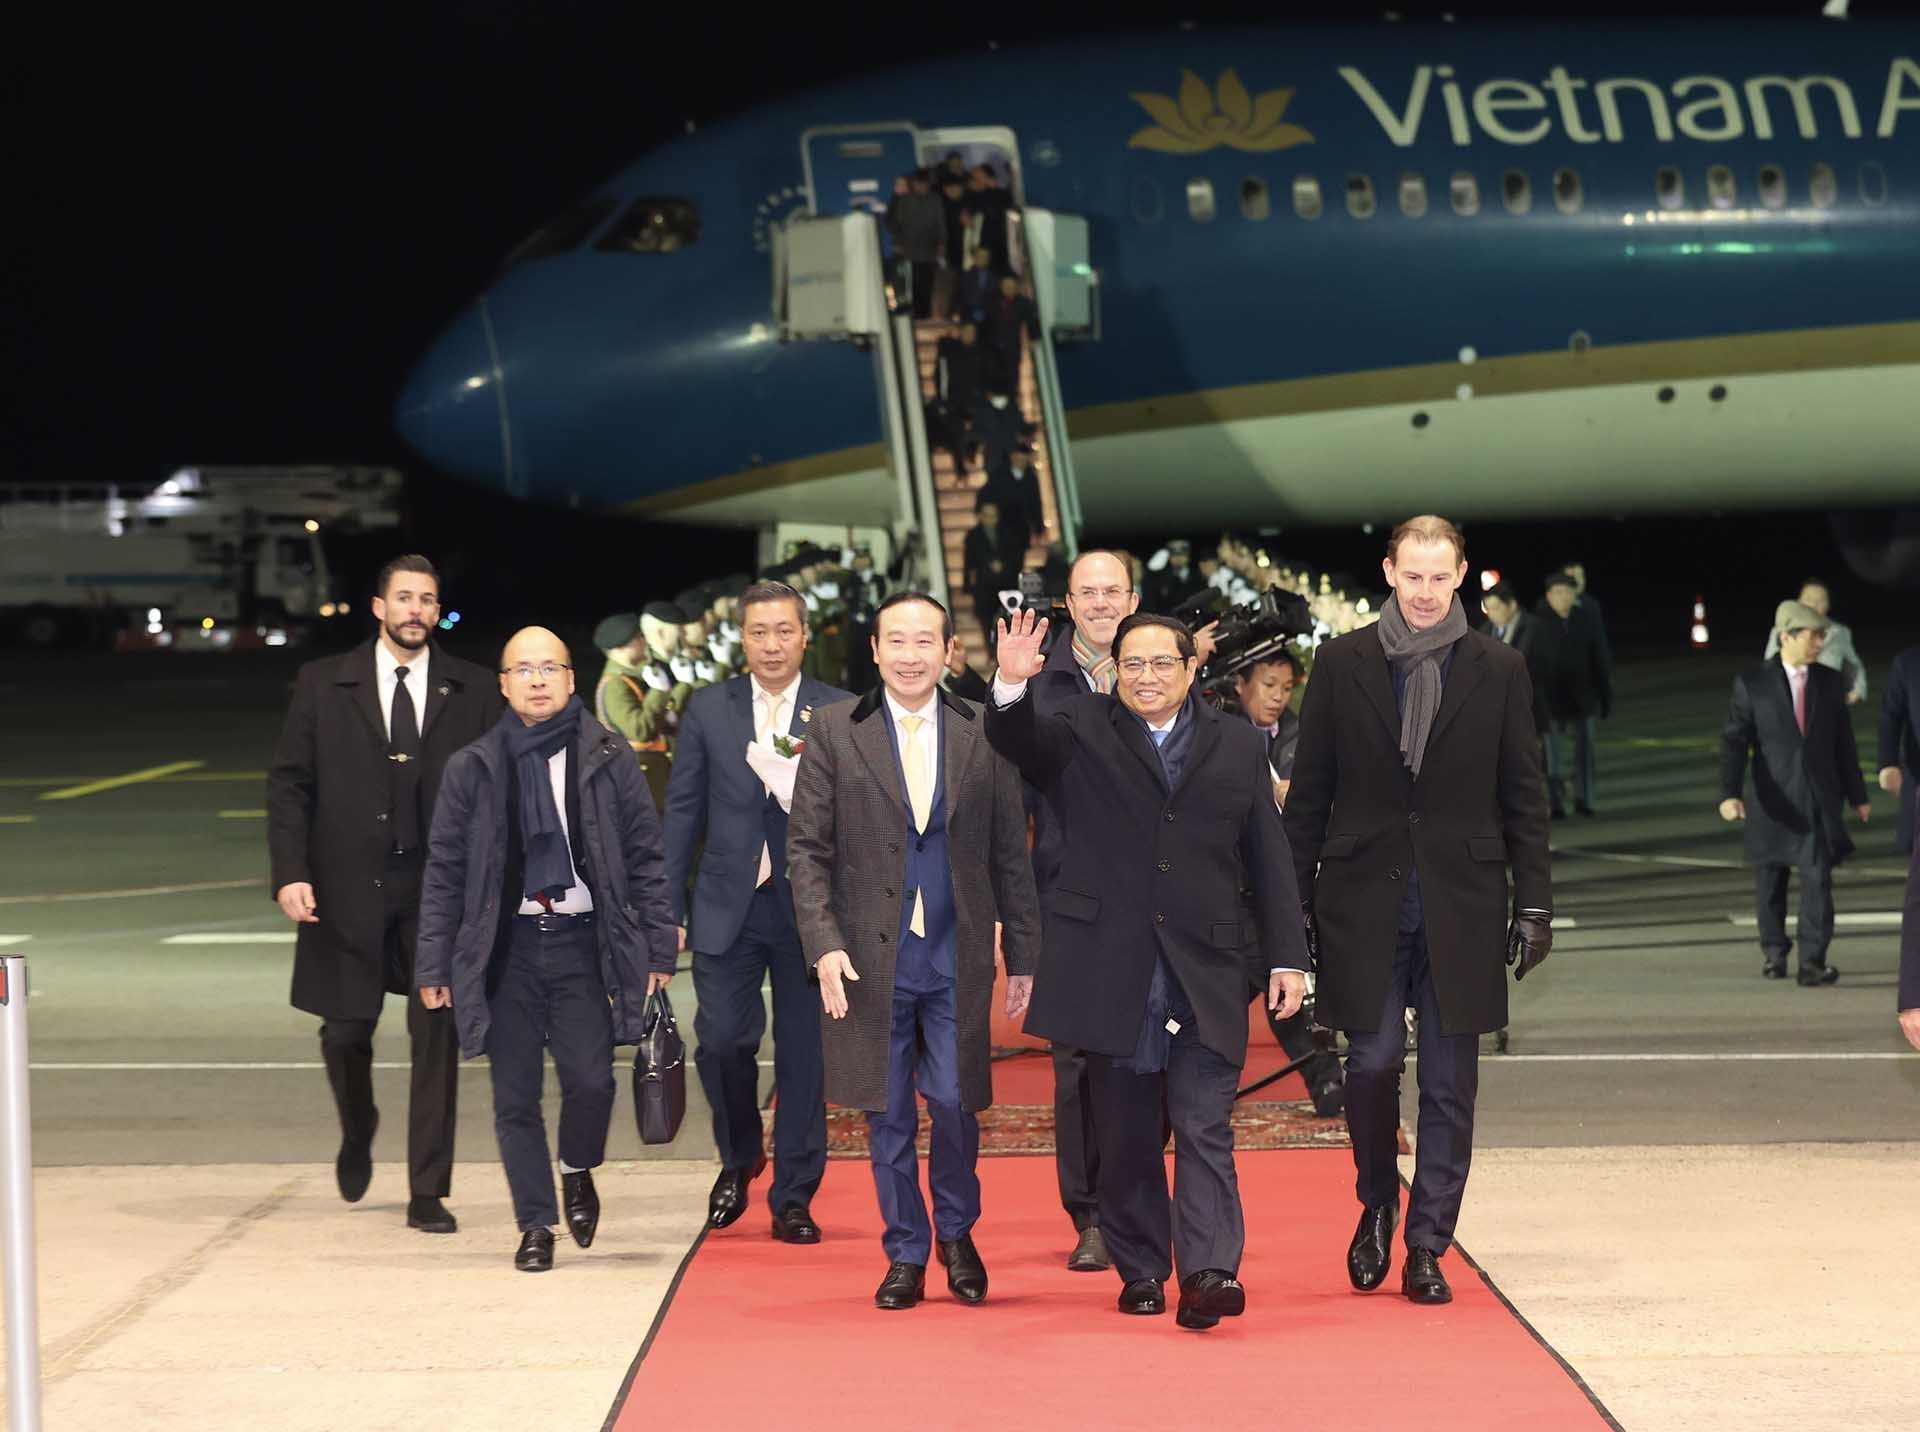 Thủ tướng Phạm Minh Chính lên đường dự Hội nghị cấp cao kỷ niệm 45 năm quan hệ ASEAN-EU và thăm Luxembourg, Hà Lan, Bỉ